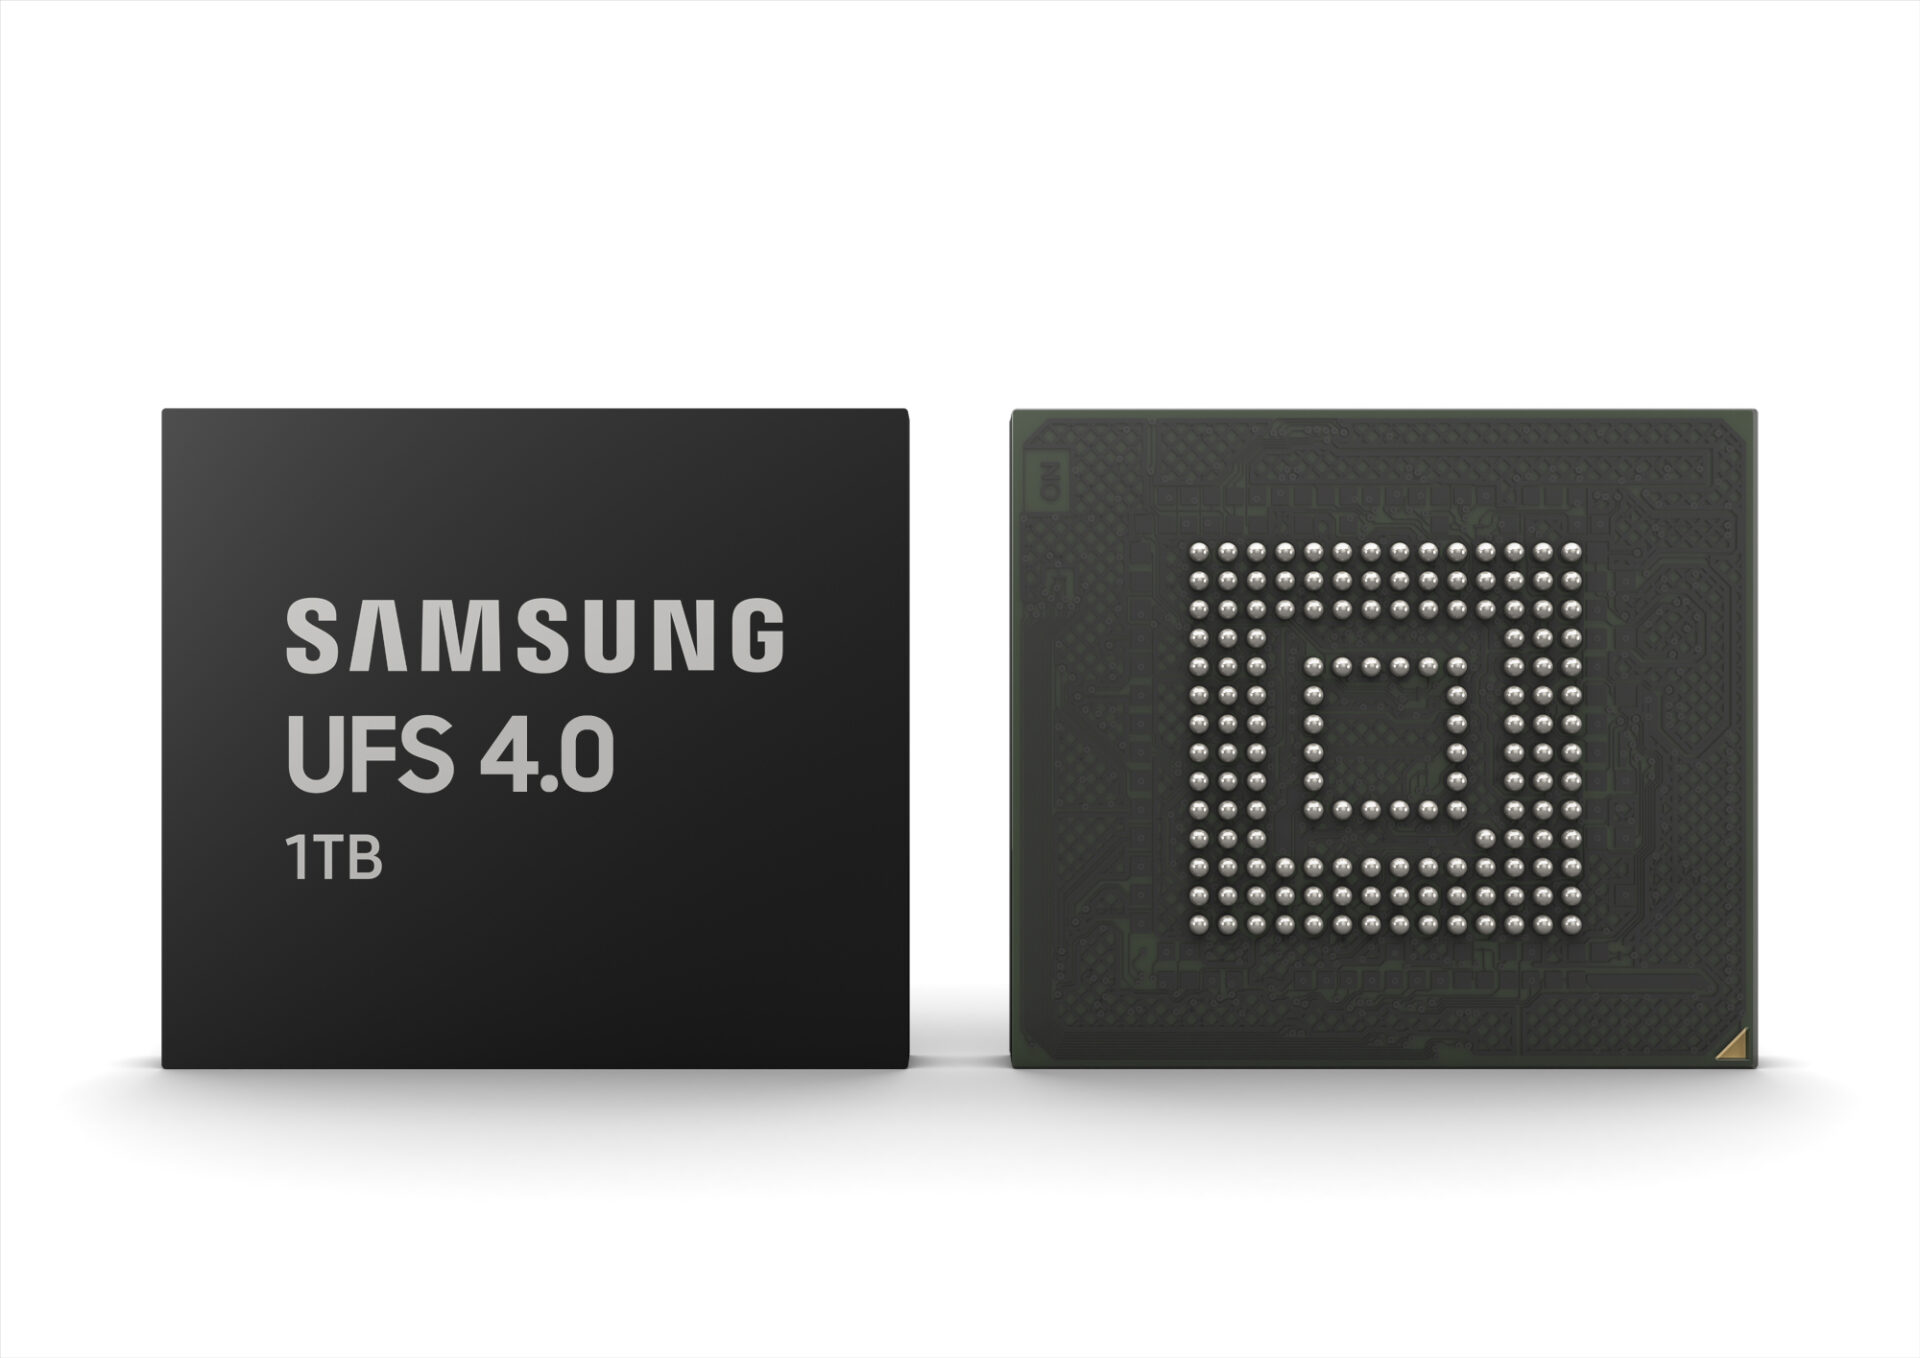 Samsung เปิดตัว UFS 4.0 เร็วขึ้น 2 เท่า, ประหยัดพลังงานเพิ่ม 46% และมีขนาดเล็กลง!